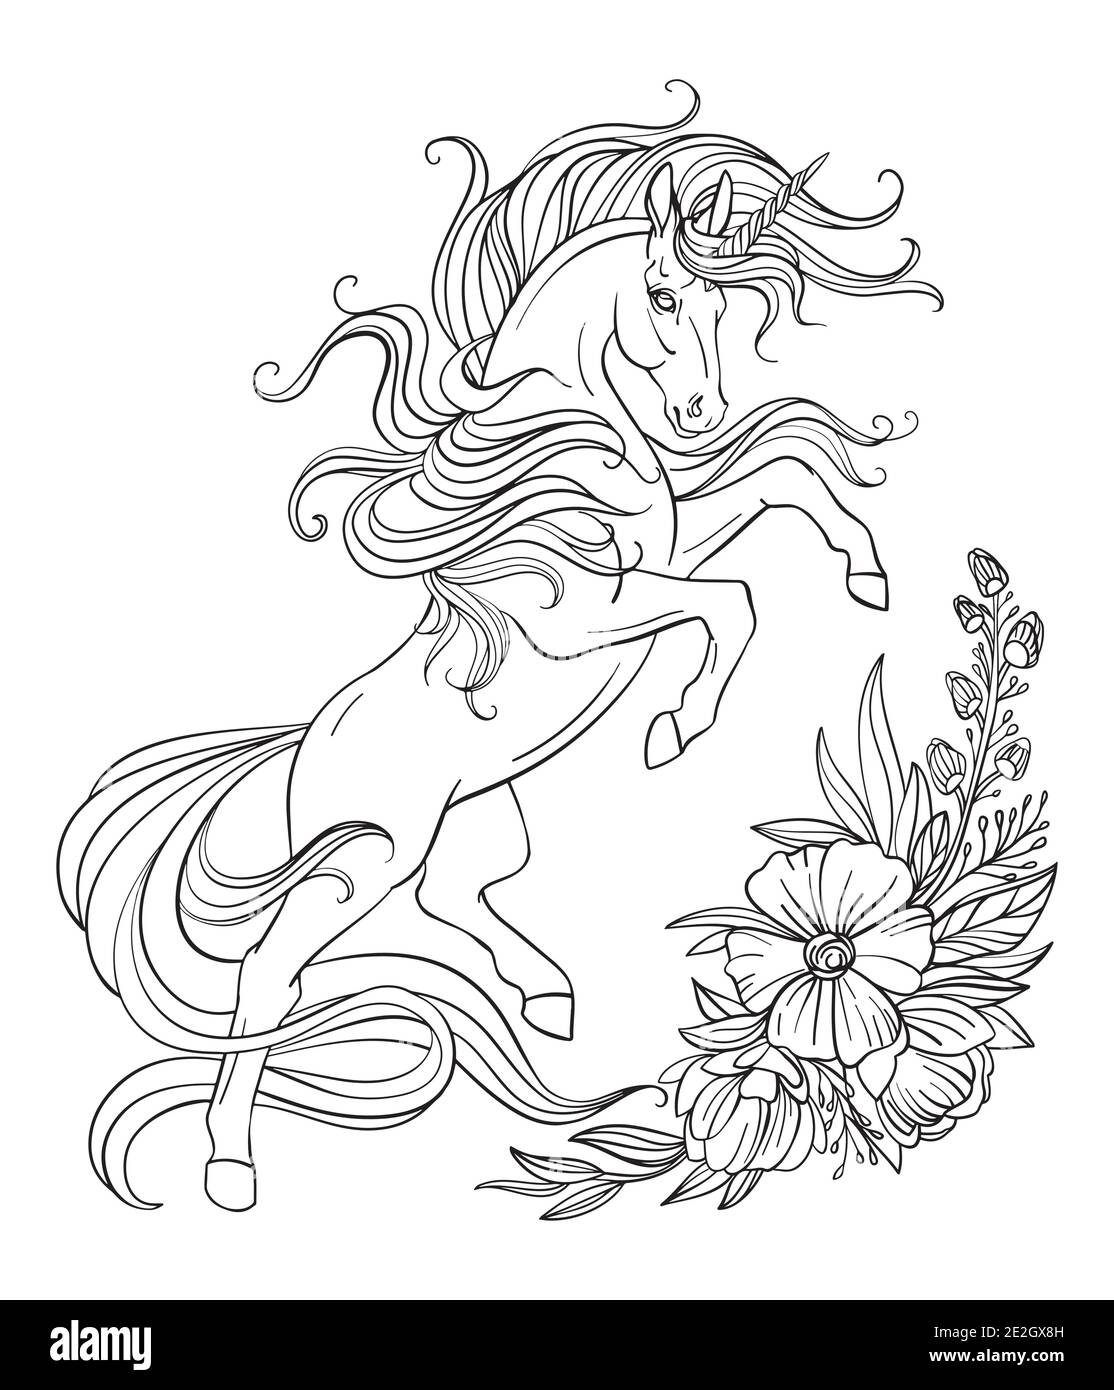 Disegno isolato arato unicorno con manie lunghe e fiori. Modello a groviglio per libro da colorare, tatuaggio, t-shirt, logo, segno. Illustratore stilizzato Illustrazione Vettoriale